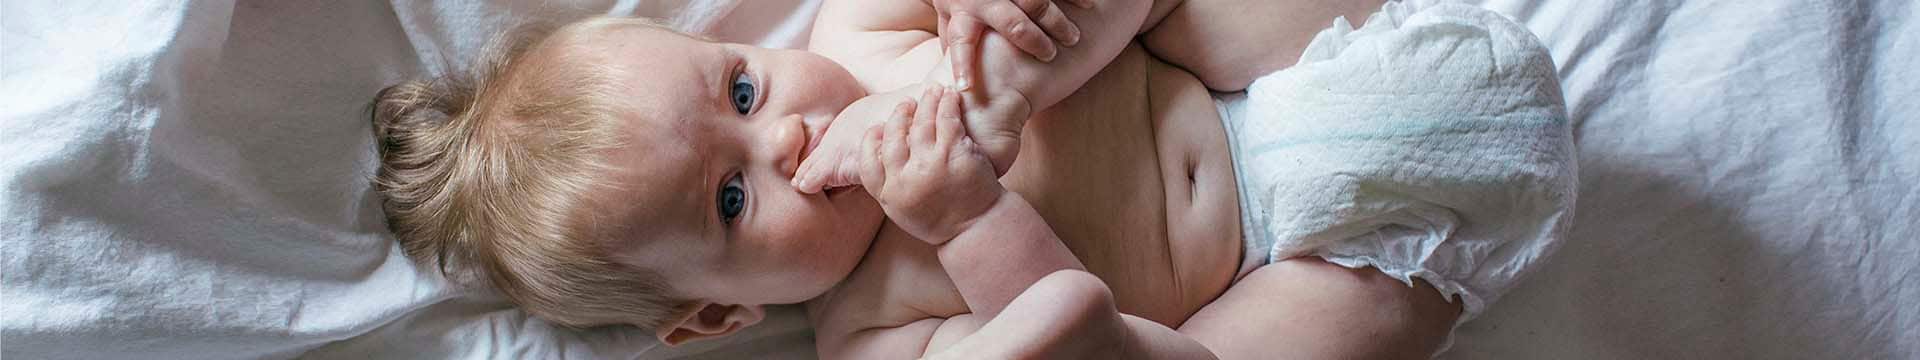 Колики у грудного ребенка: как распознать и чем помочь